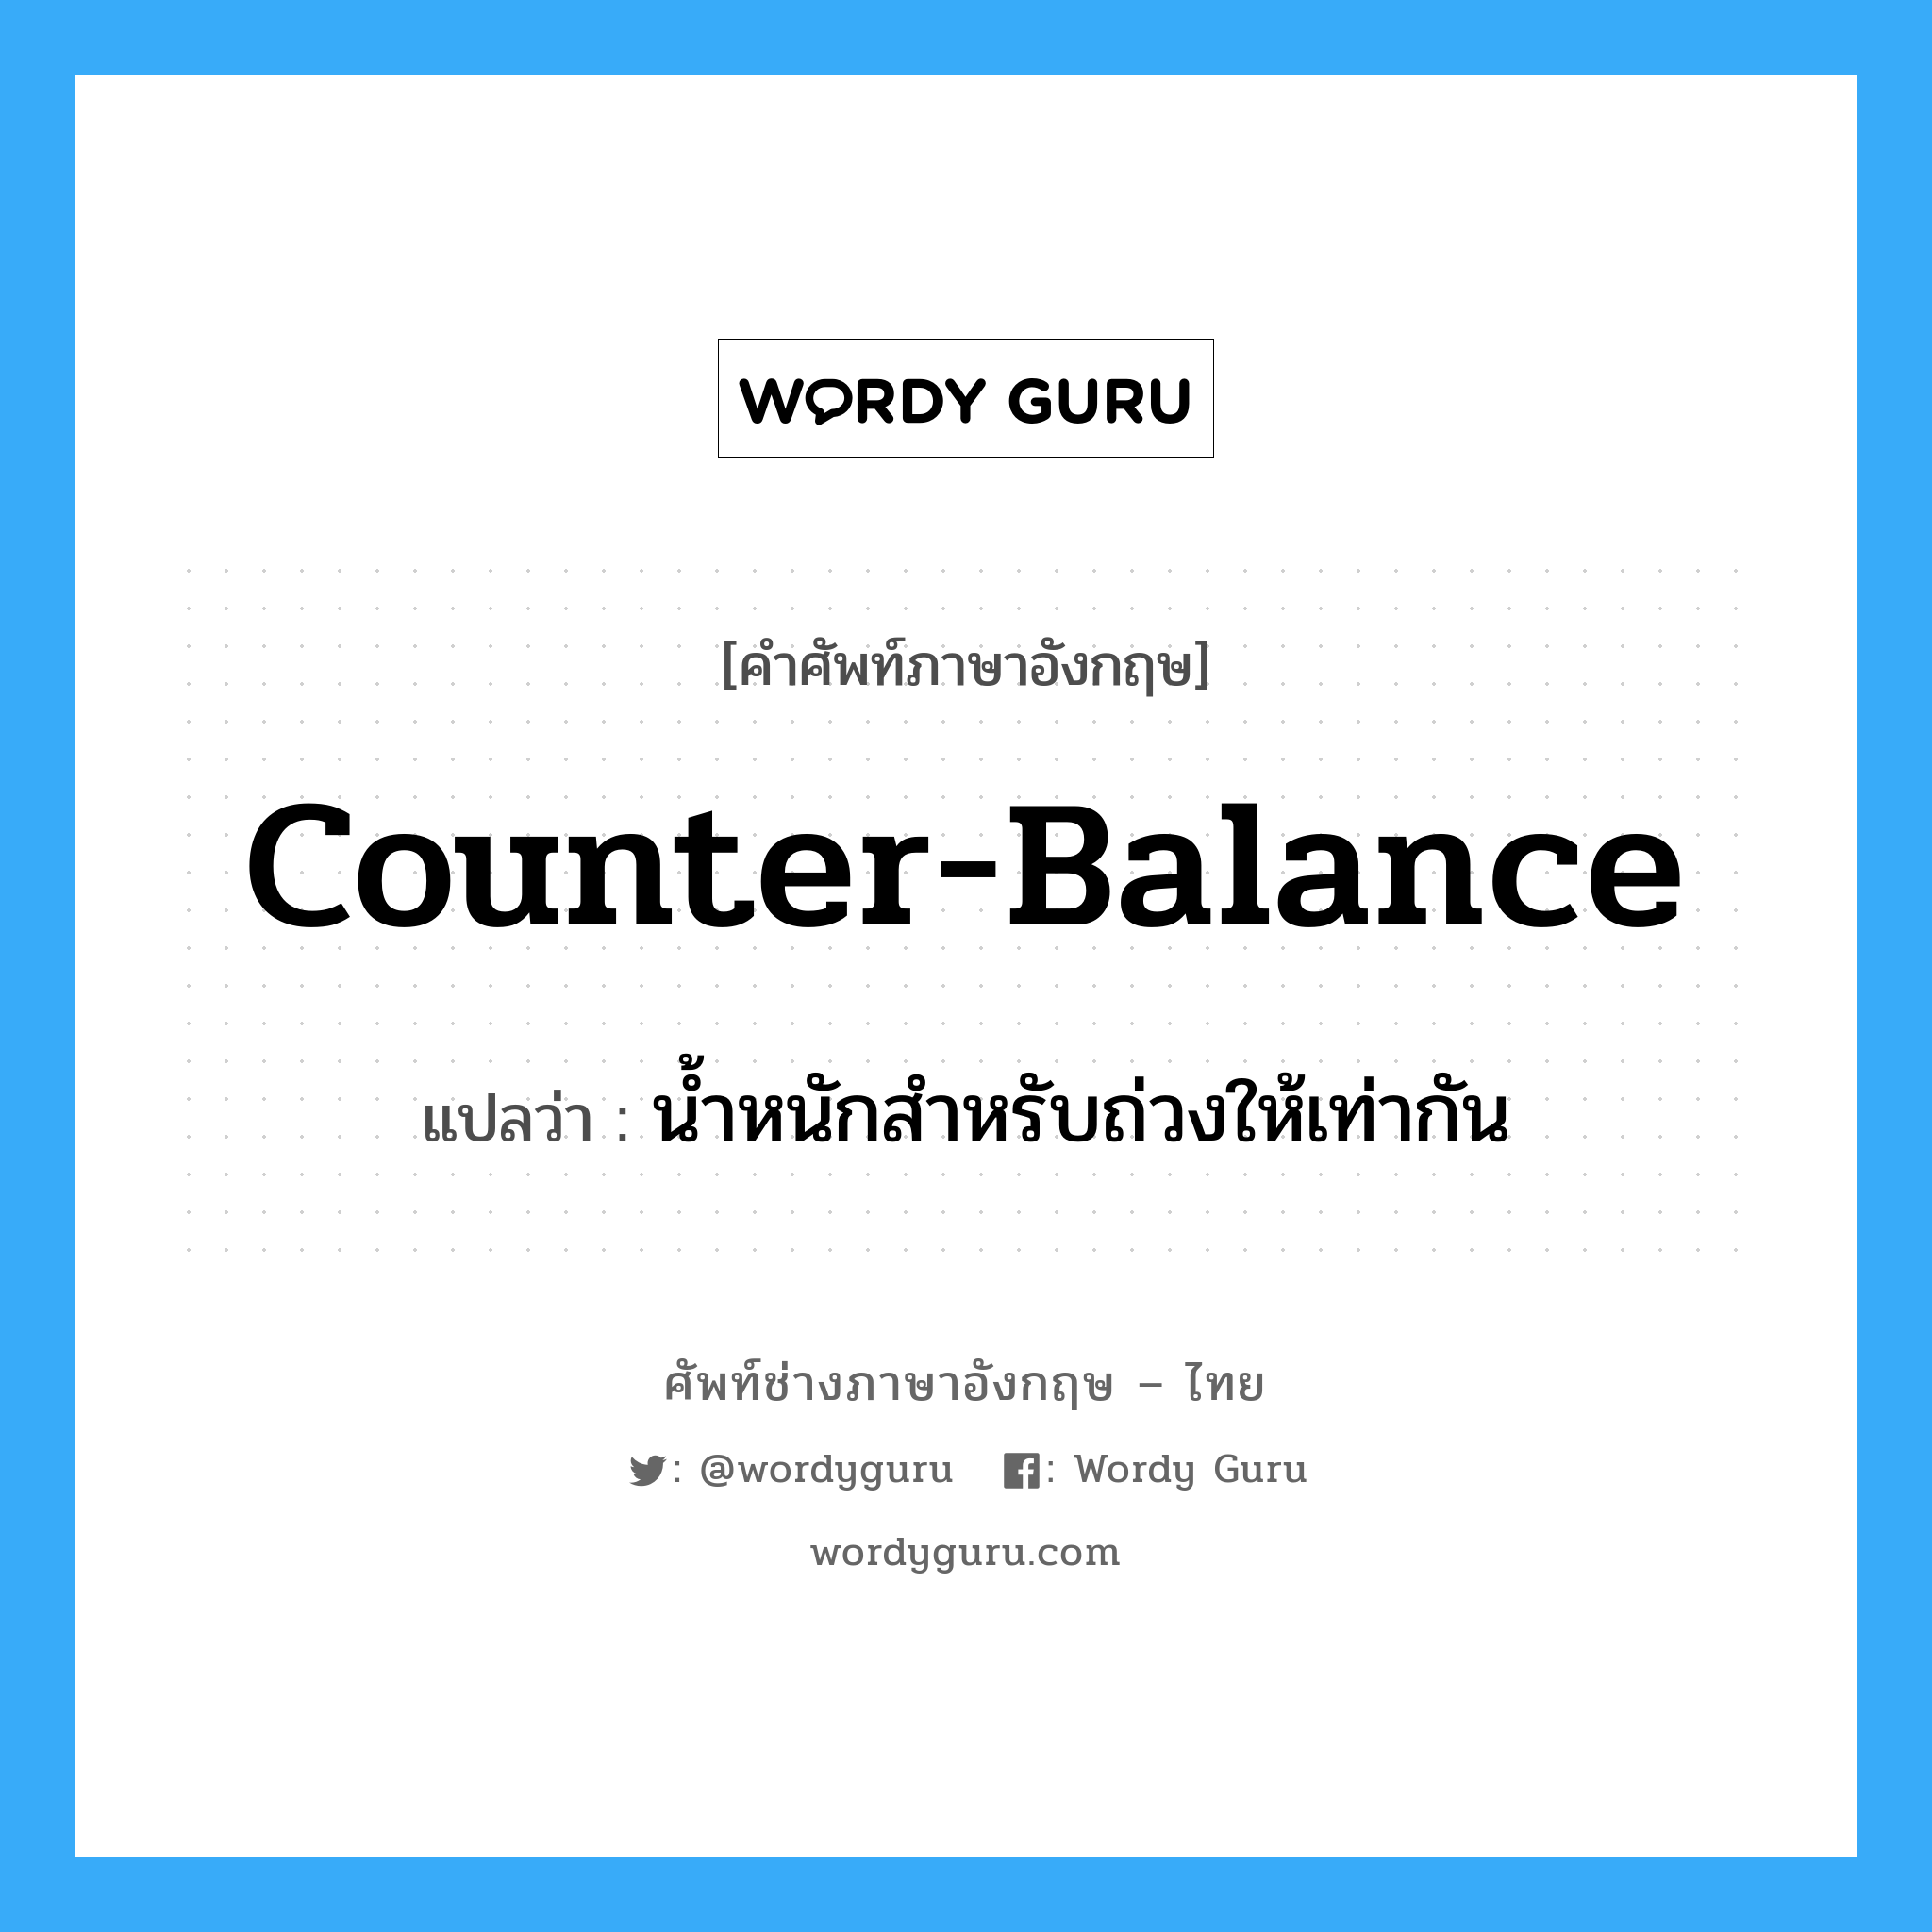 น้ำหนักสำหรับถ่วงให้เท่ากัน ภาษาอังกฤษ?, คำศัพท์ช่างภาษาอังกฤษ - ไทย น้ำหนักสำหรับถ่วงให้เท่ากัน คำศัพท์ภาษาอังกฤษ น้ำหนักสำหรับถ่วงให้เท่ากัน แปลว่า counter-balance